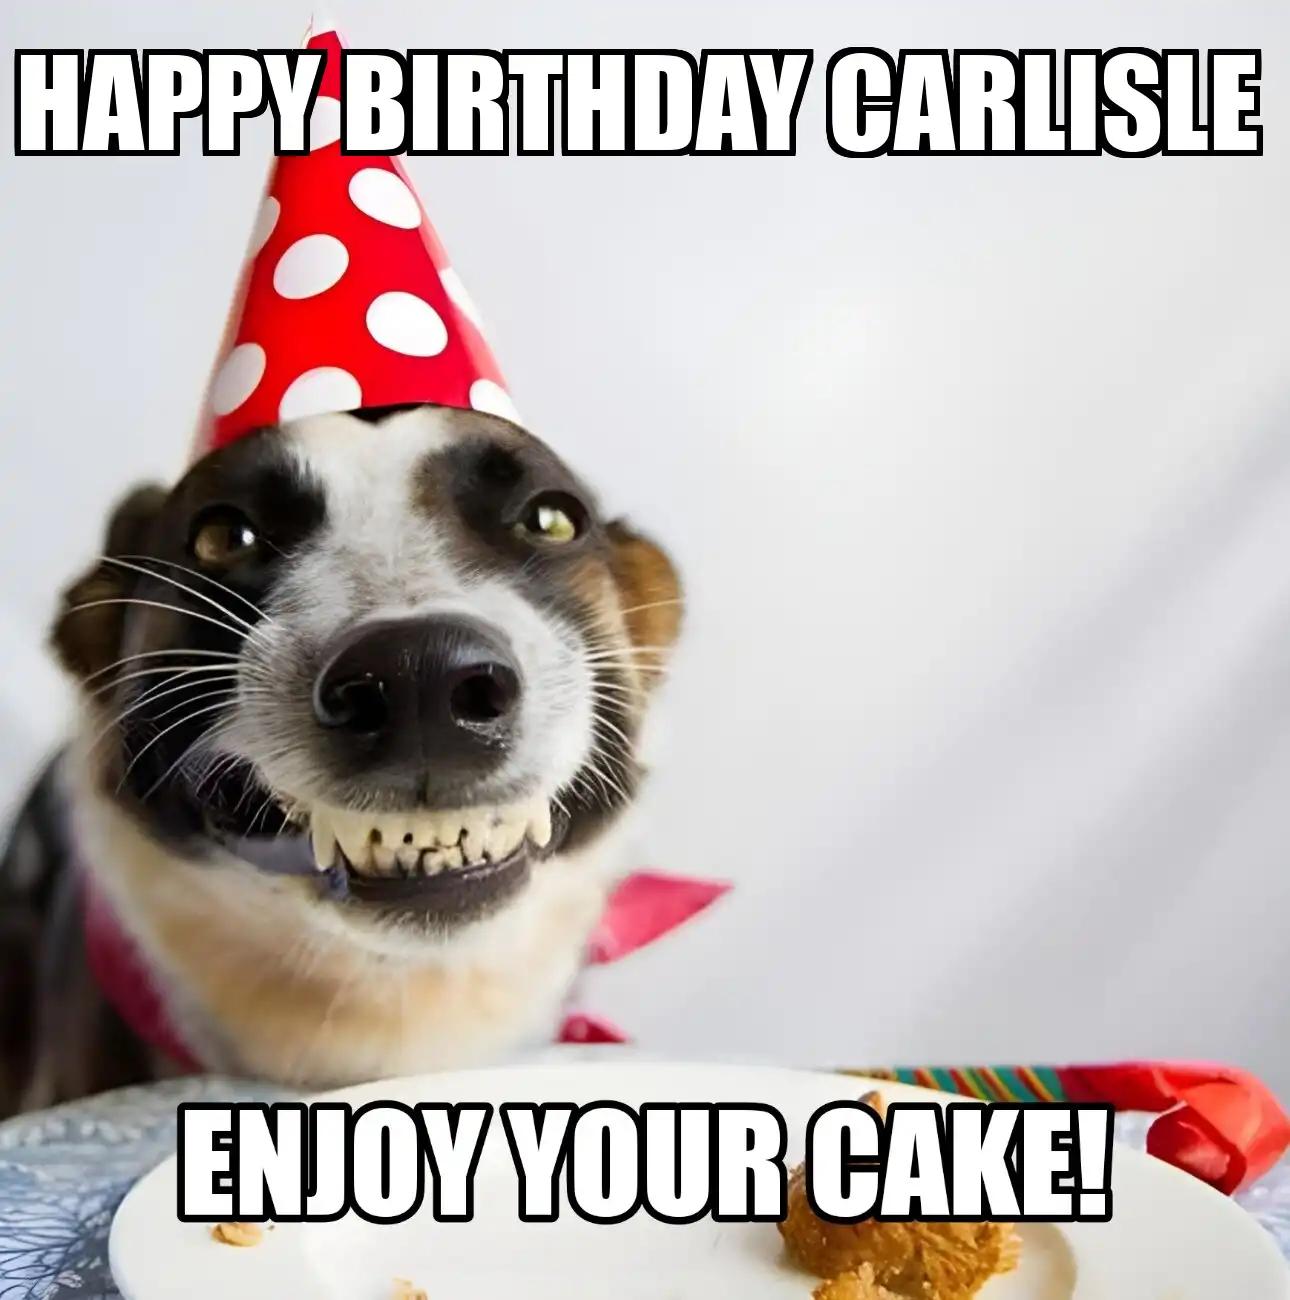 Happy Birthday Carlisle Enjoy Your Cake Dog Meme